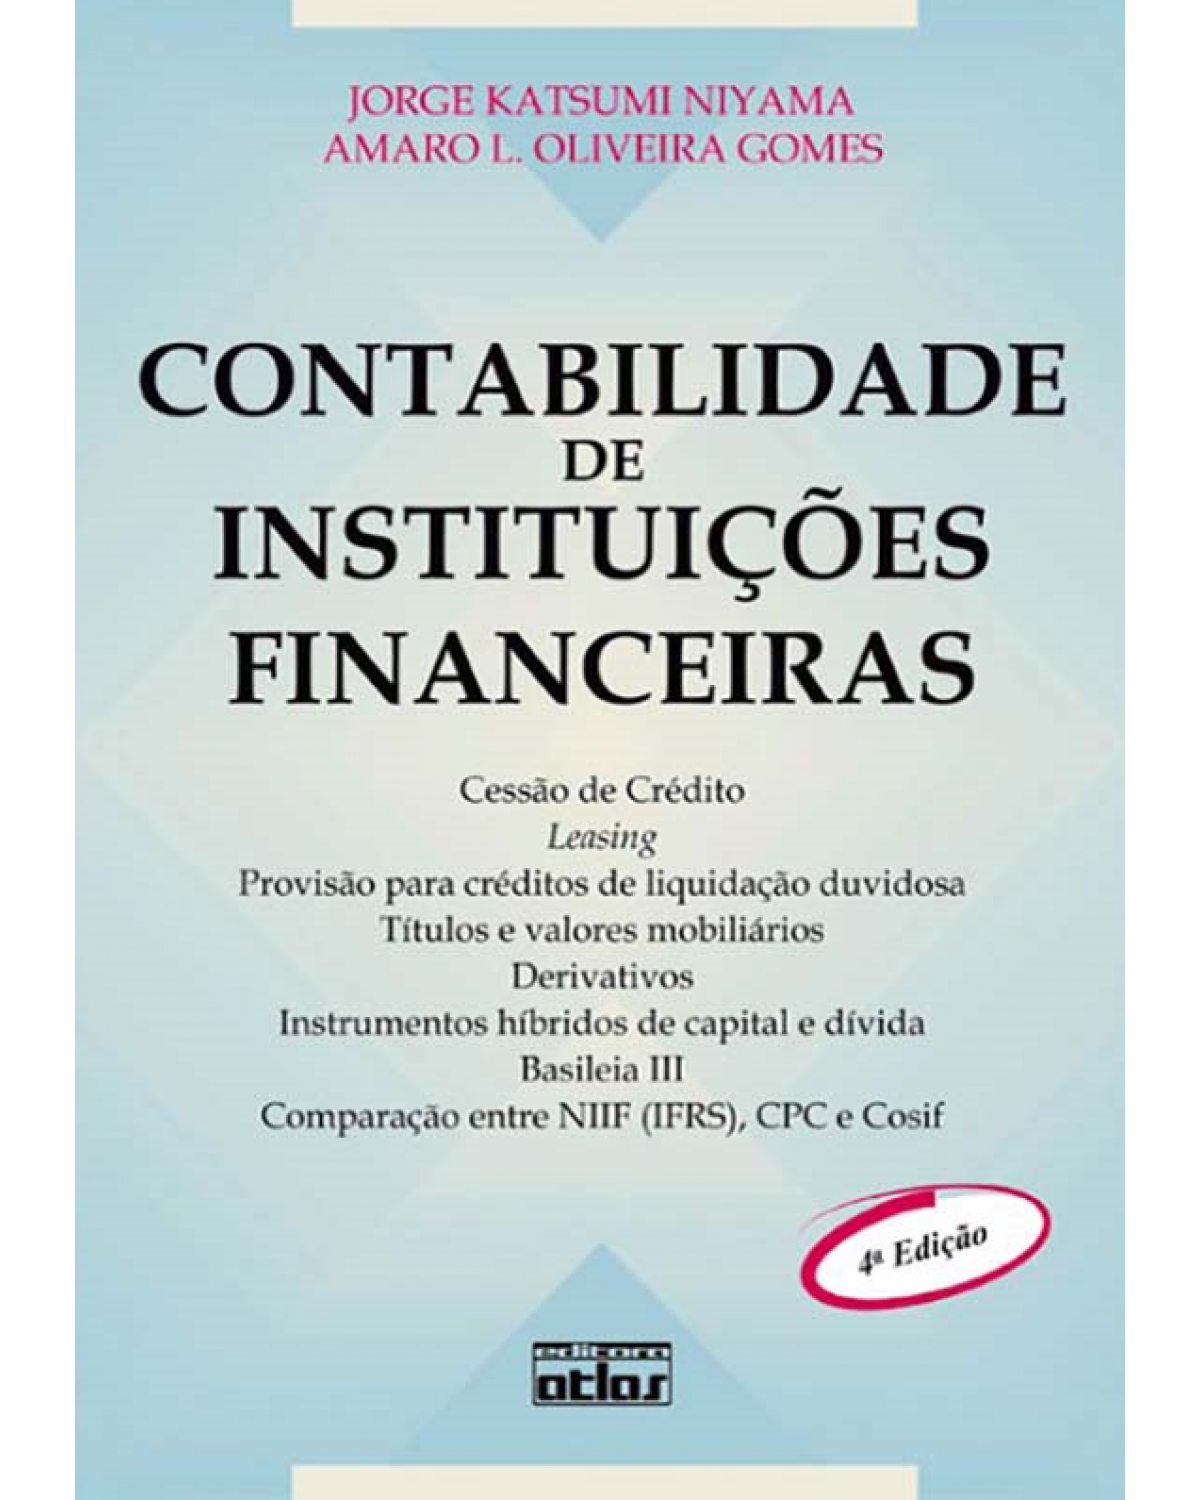 Contabilidade de instituições financeiras - 4ª Edição | 2012